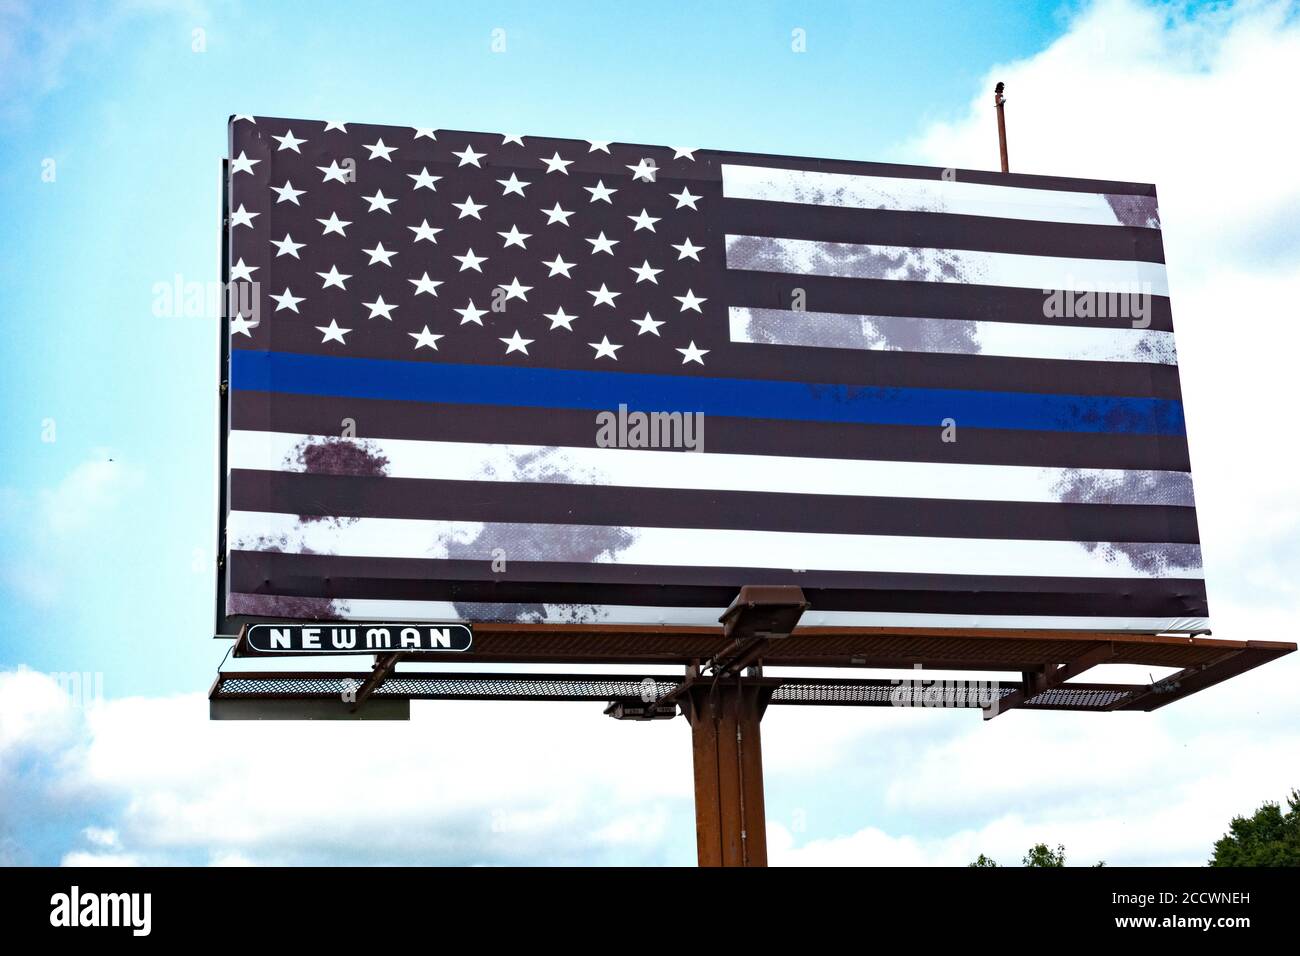 Panneau d'affichage avec le drapeau américain Blue Line en noir et blanc avec une bande bleue et des taches grises. Fergus Falls Minnesota MN États-Unis Banque D'Images